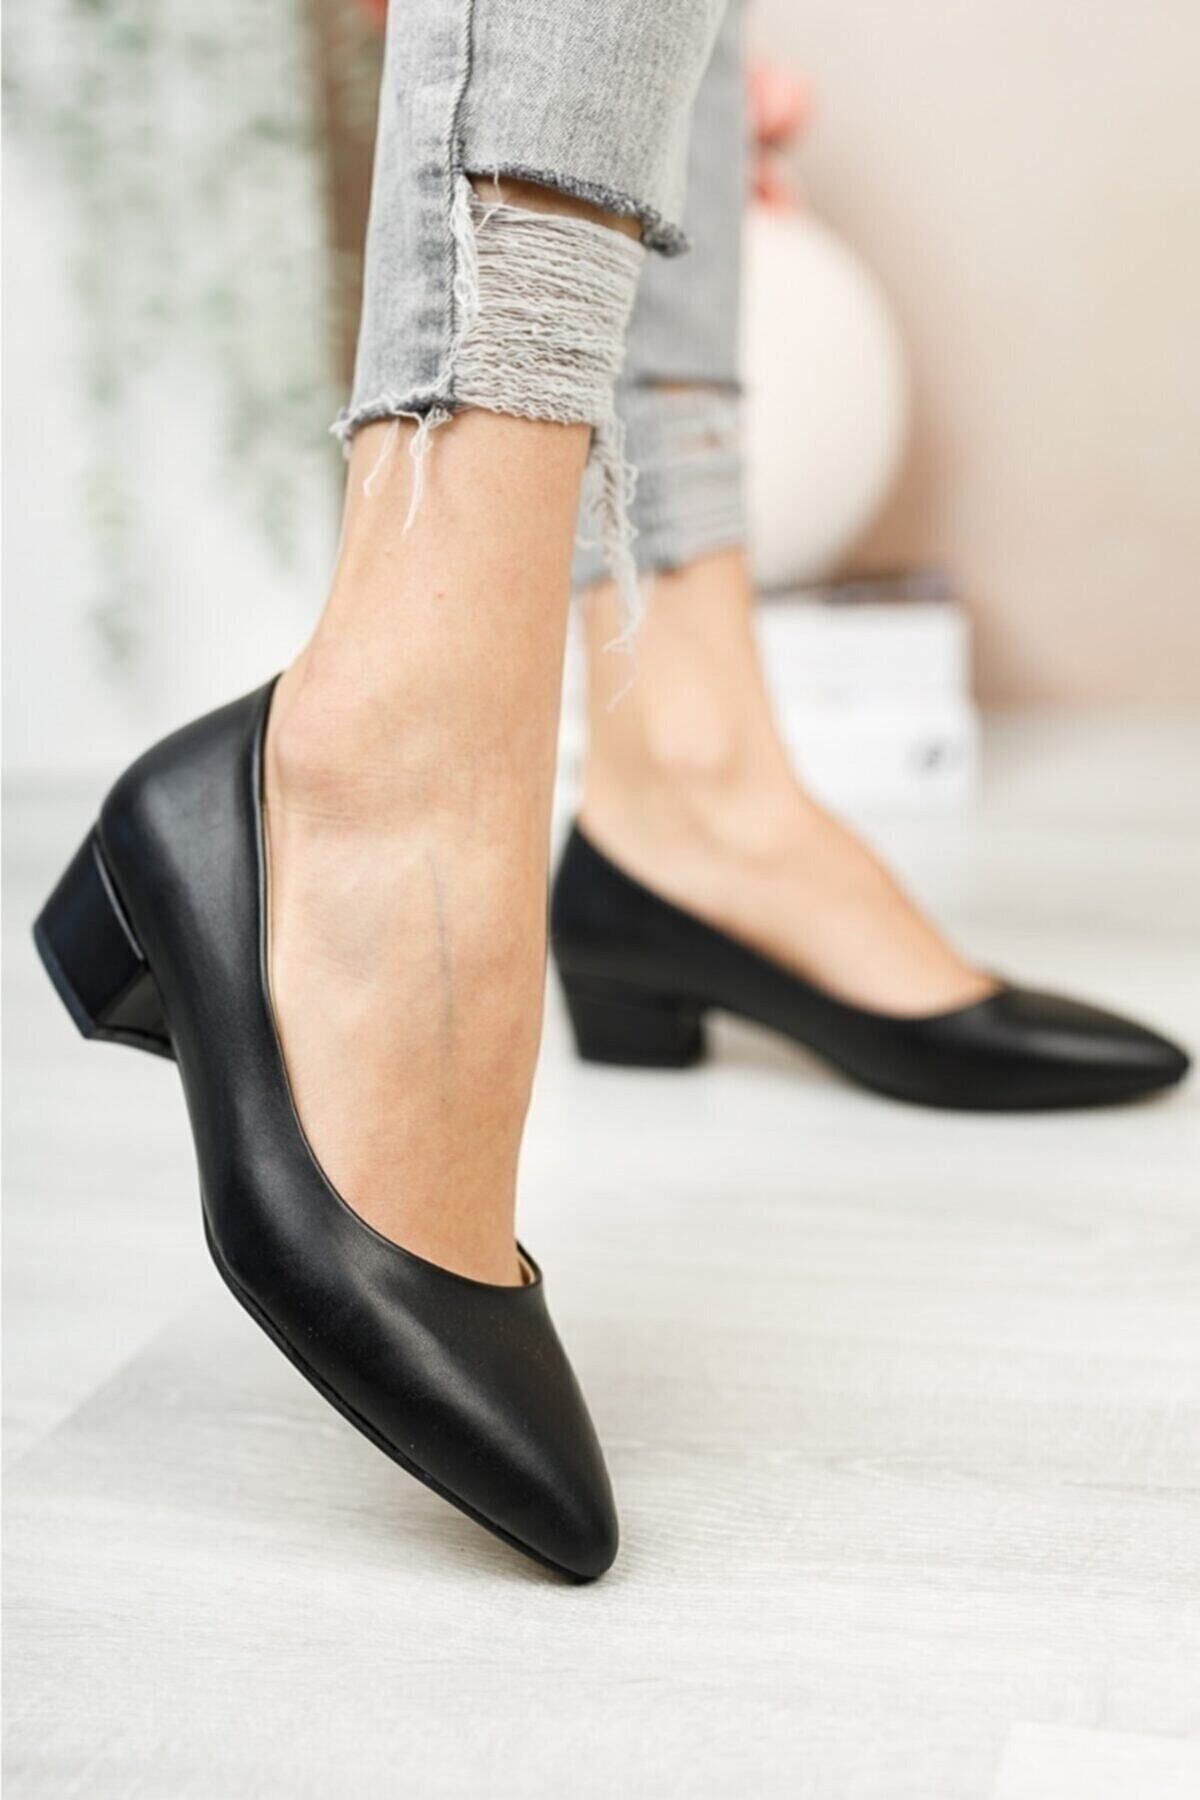 BAY ARMEDON Kadın Ayakkabı Siyah Cilt Kısa Topuklu Klasik Ayakkabı Günlük Kısa Topuklu Abiye Ayakkabı 3 Cm